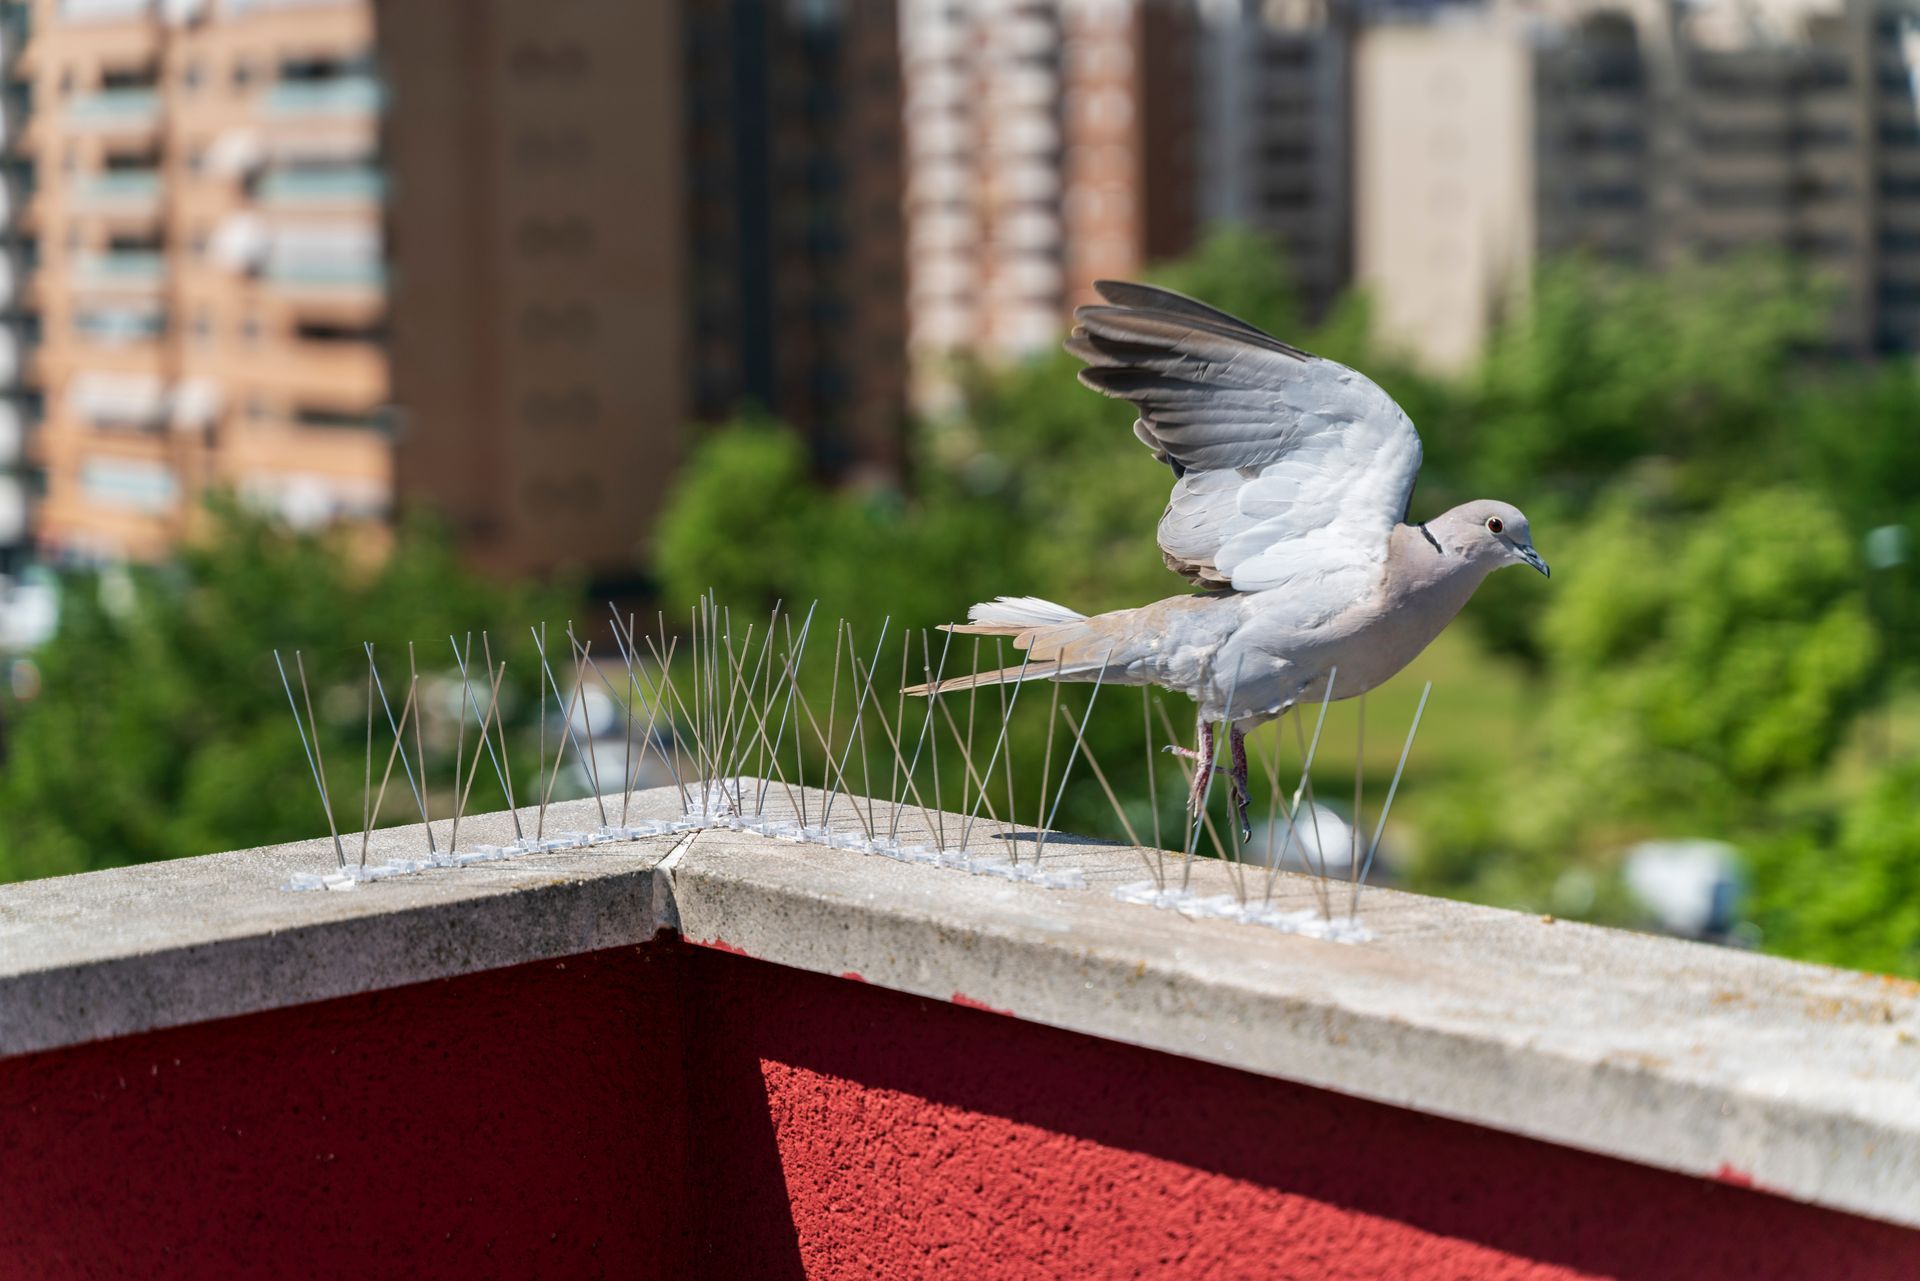 Des pics posés sur un toit avec un pigeon qui s'envole